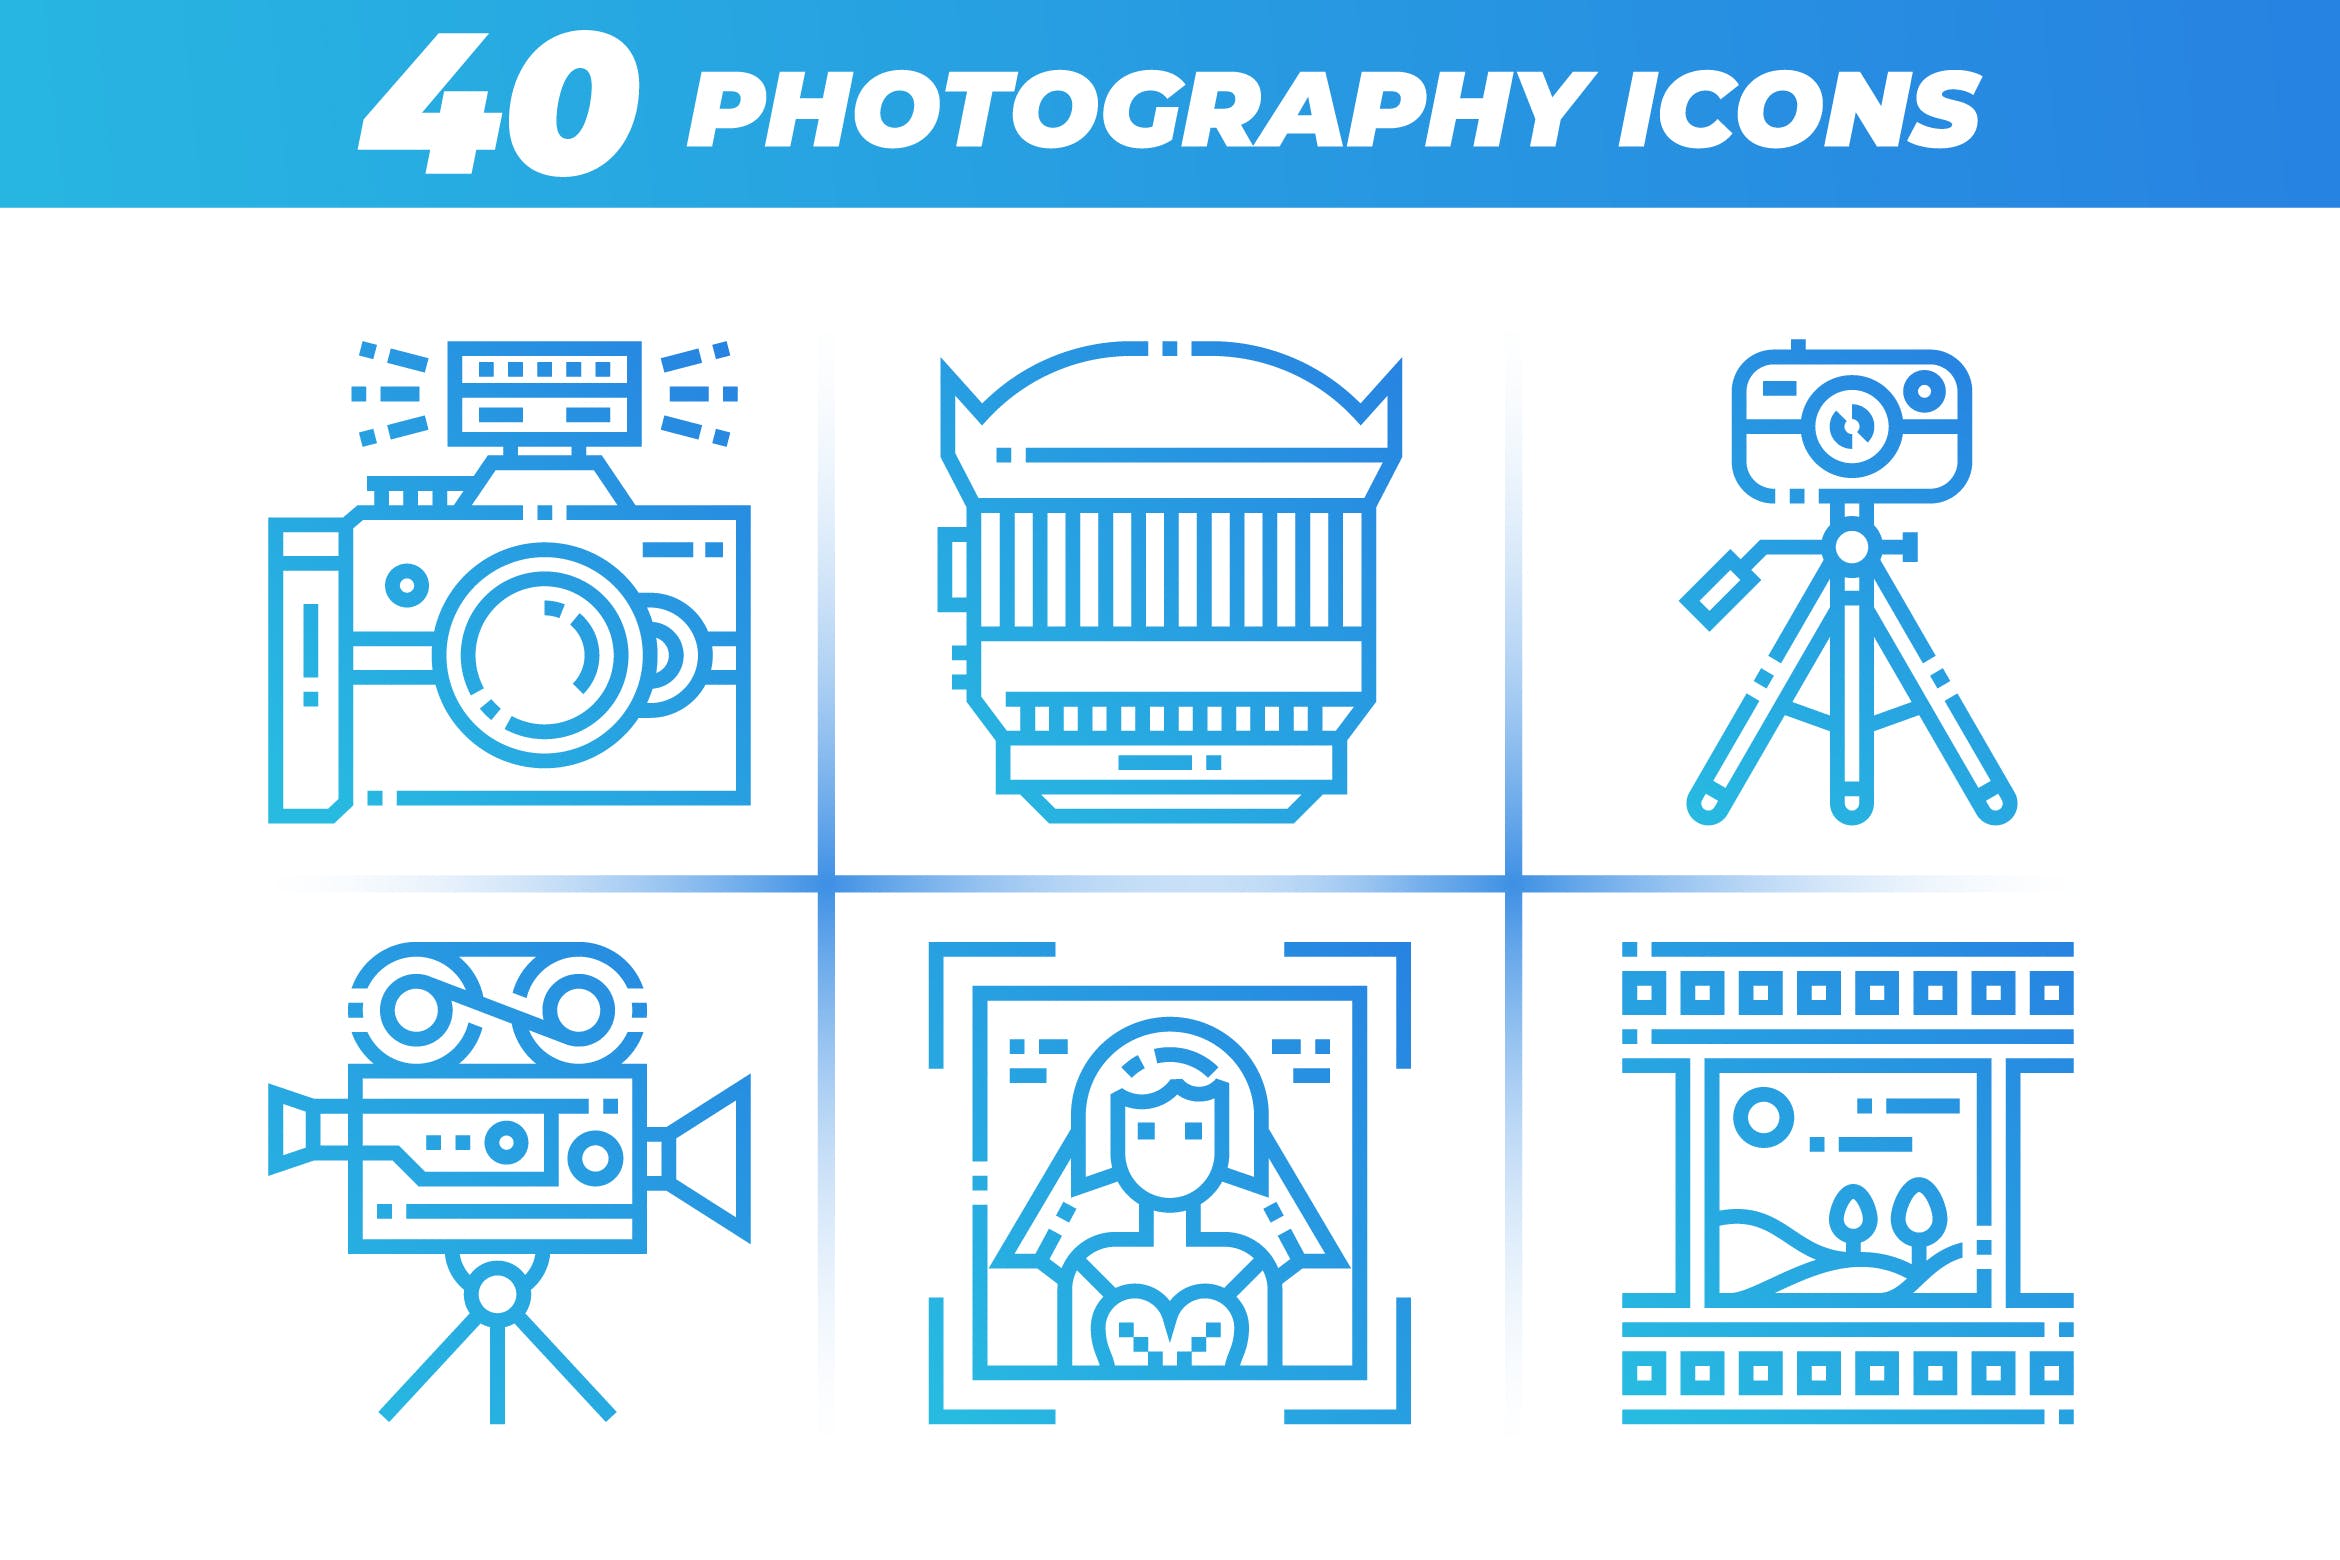 40枚摄像摄影主题矢量线性蚂蚁素材精选图标 40 Photography Icons插图